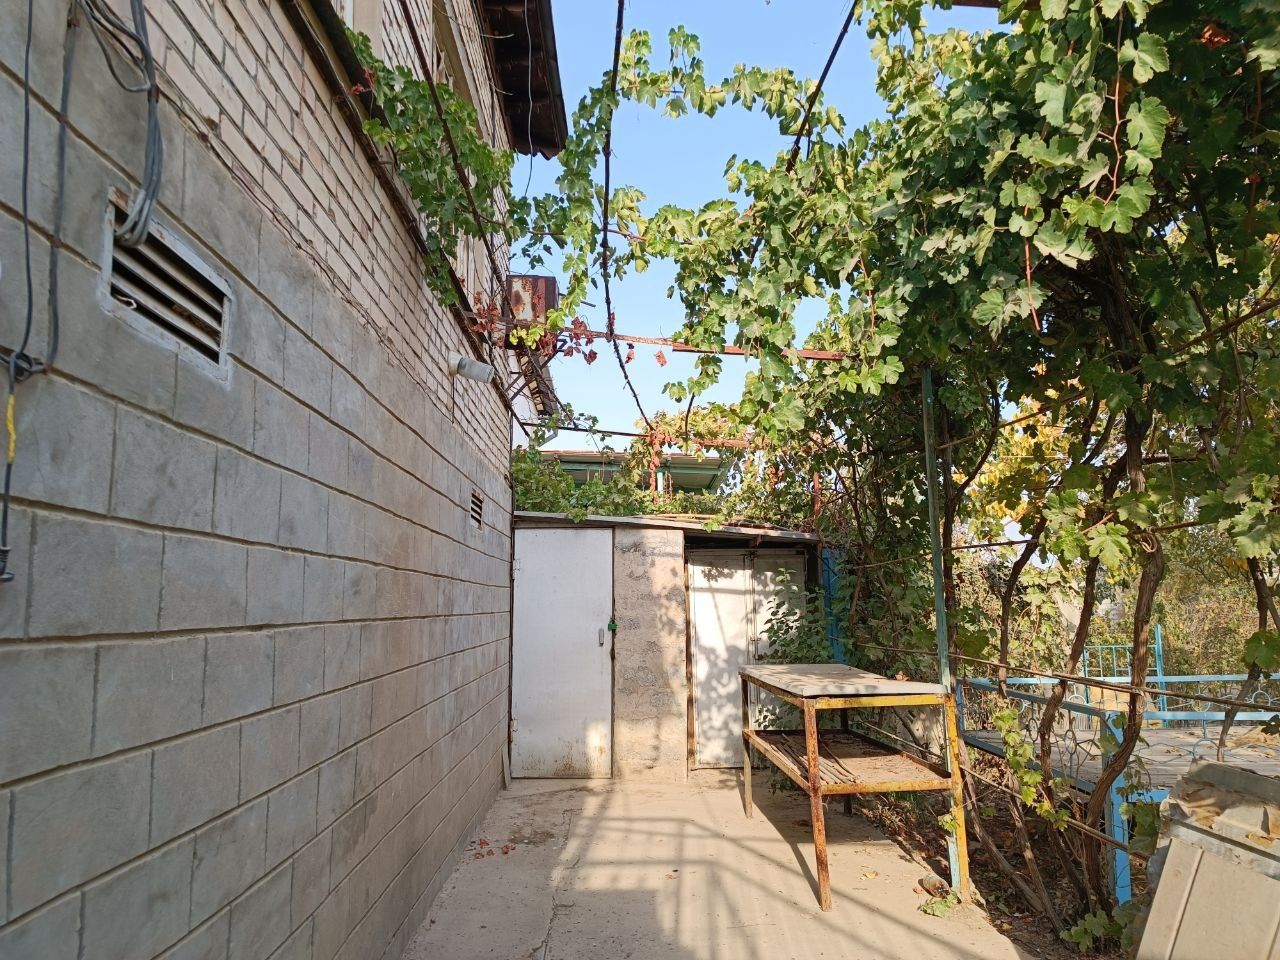 Продается дом в Янгиюльском районе Халкабад.